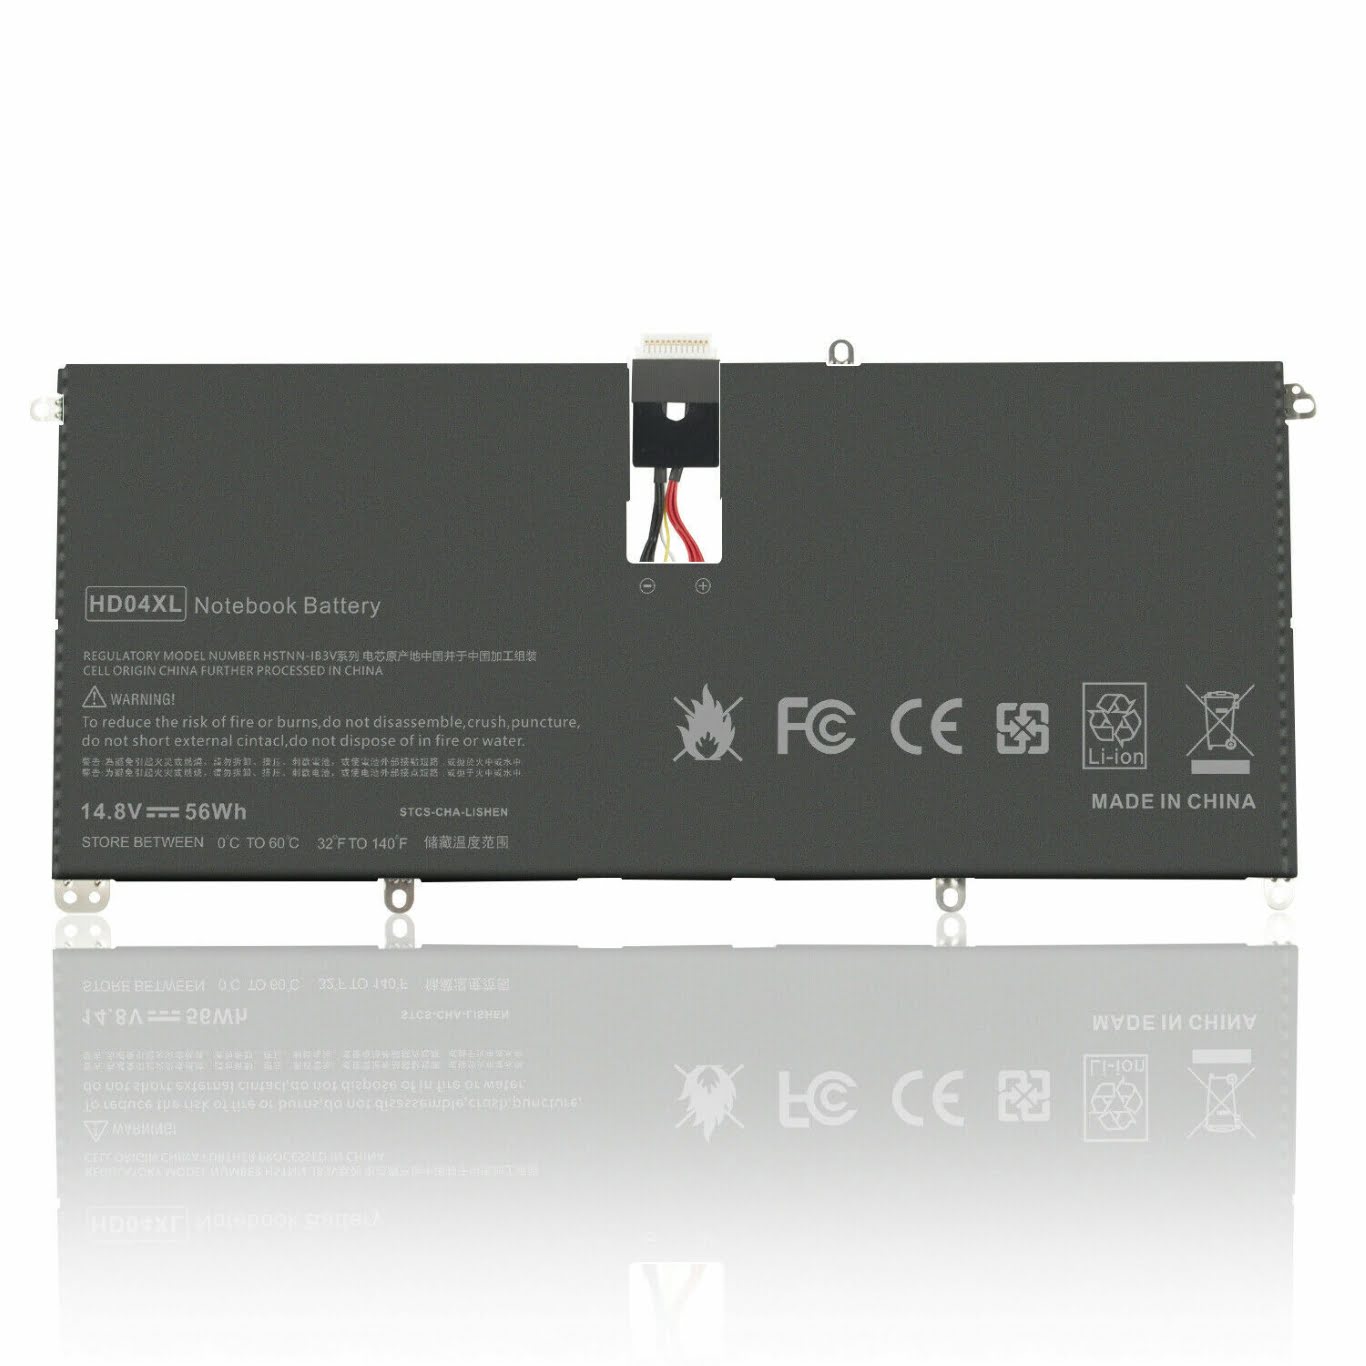 685866-171, 685866-1B1 replacement Laptop Battery for HP Envy Spectre XT 13 Series, Envy Spectre XT 13-2000eg, 4 cells, 14.8 V, 56wh